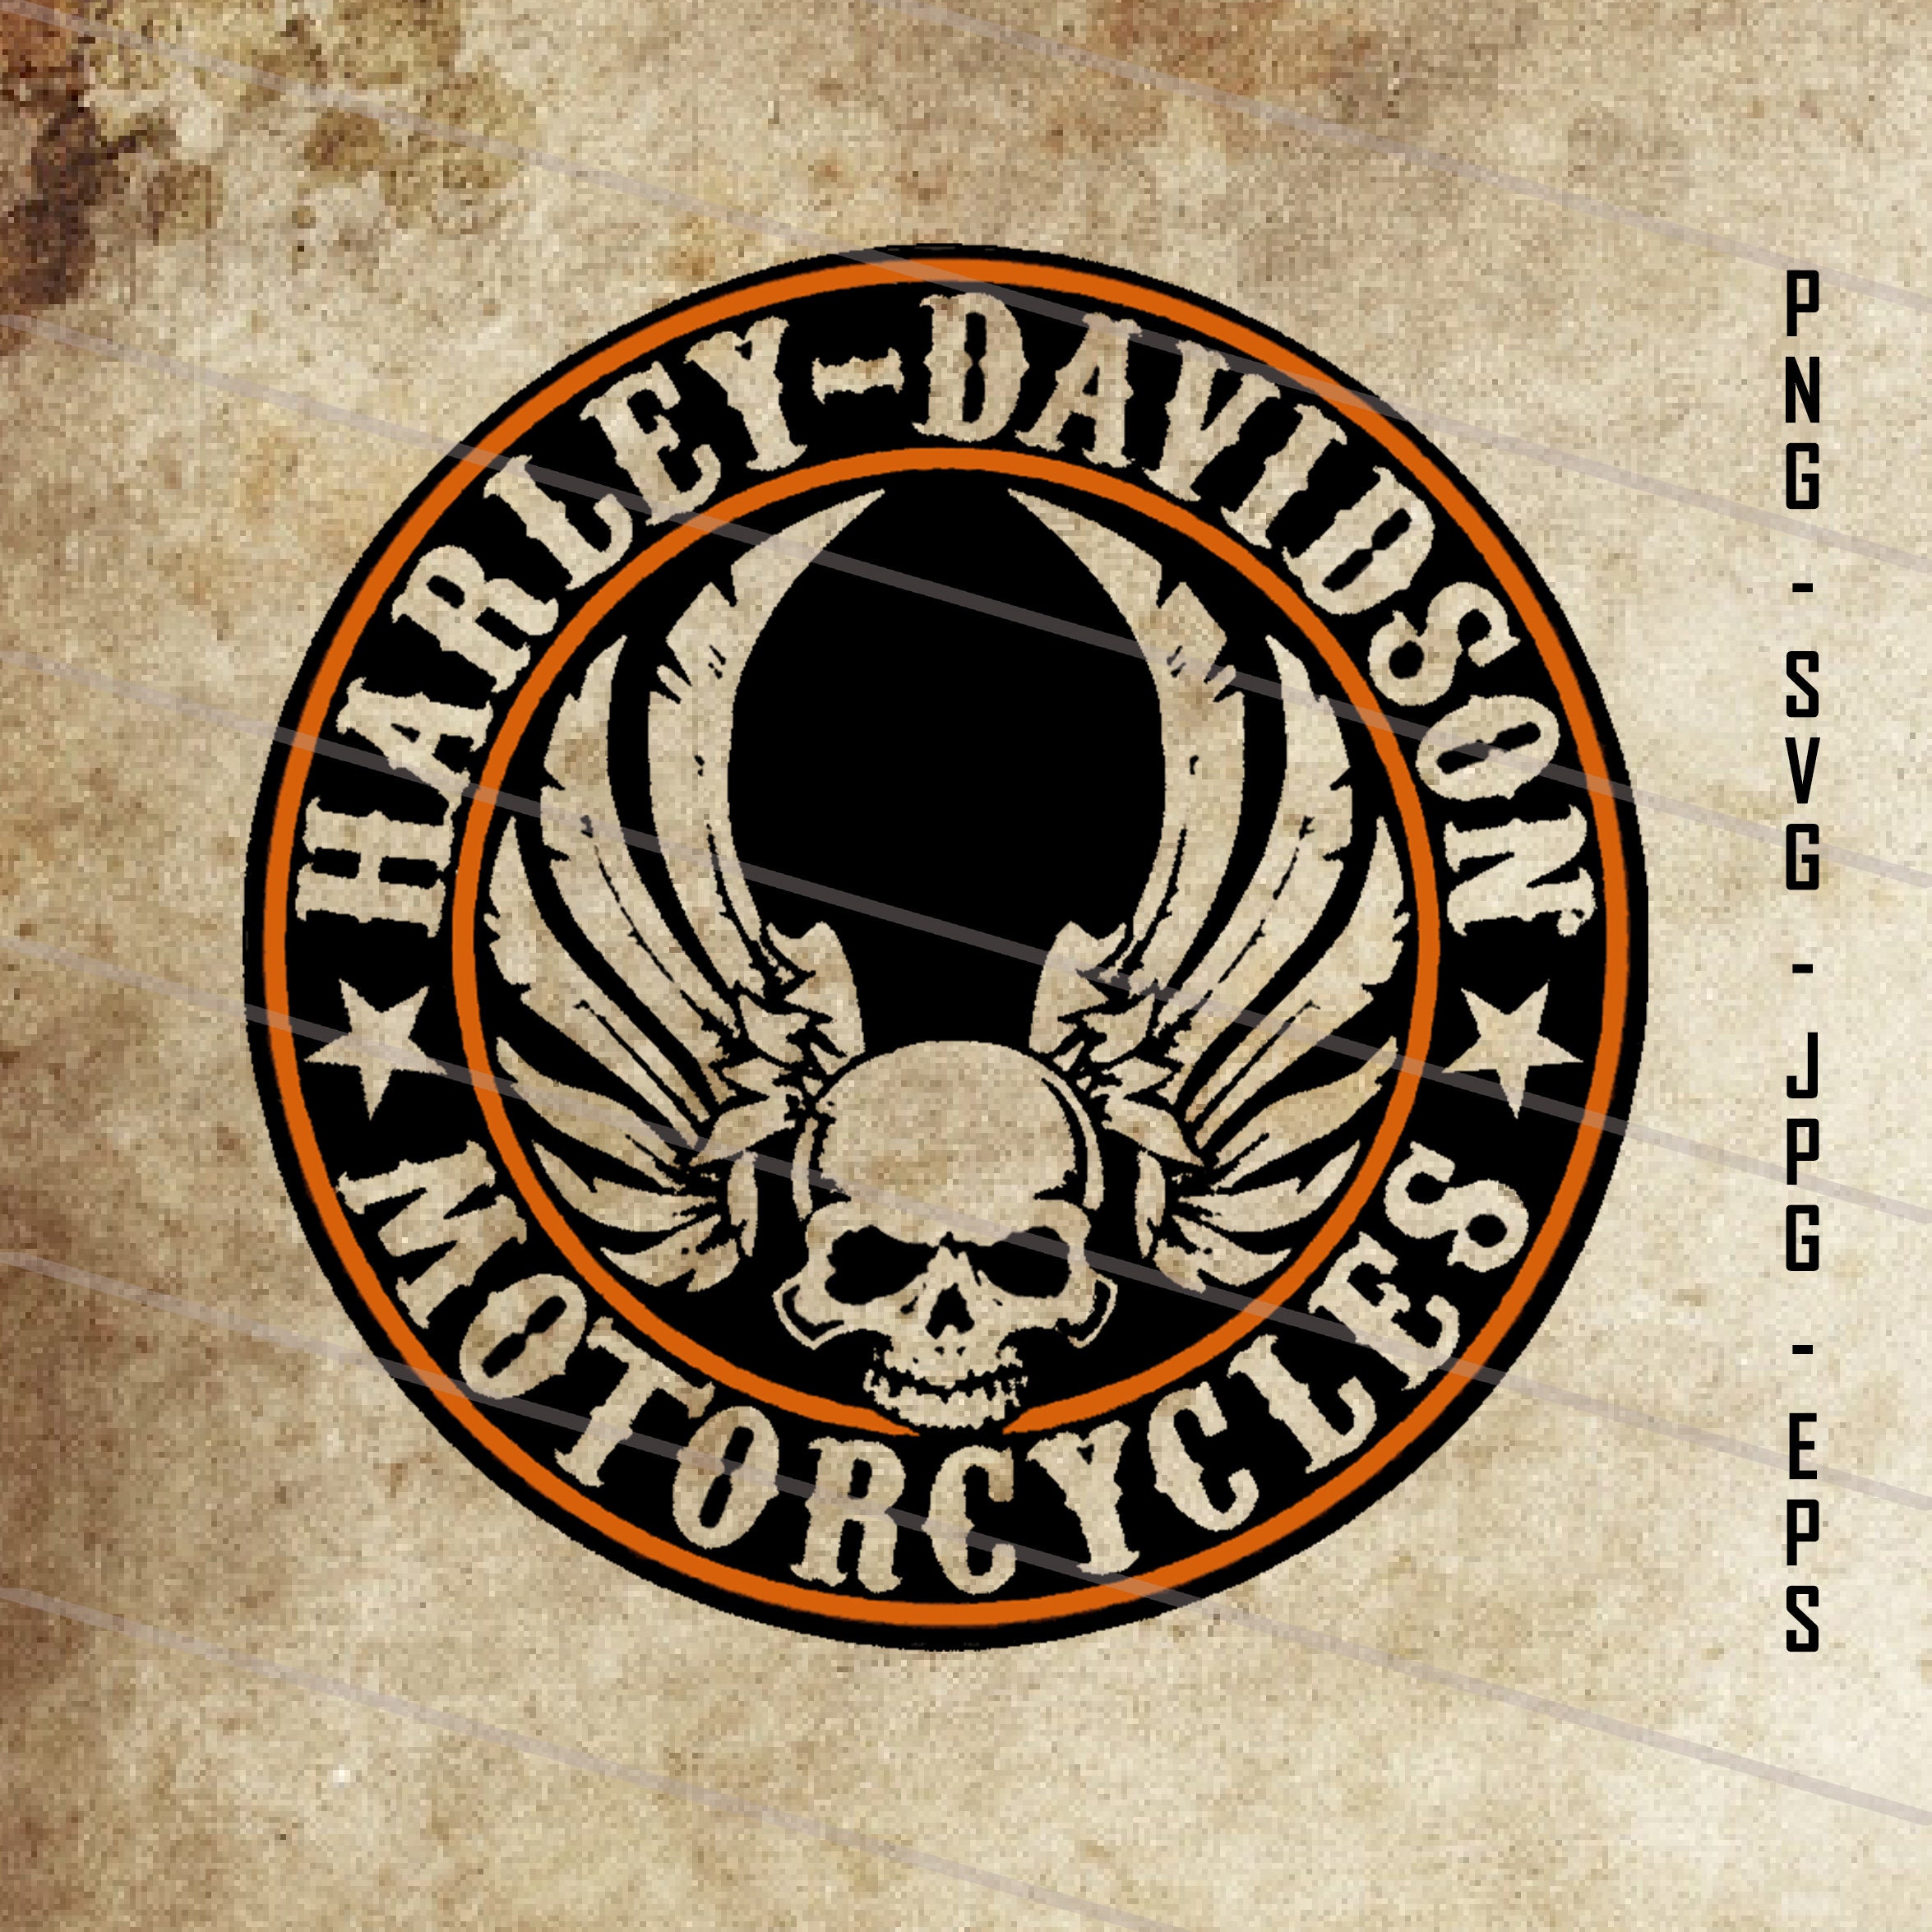 ¿Qué significa la calavera en Harley Davidson